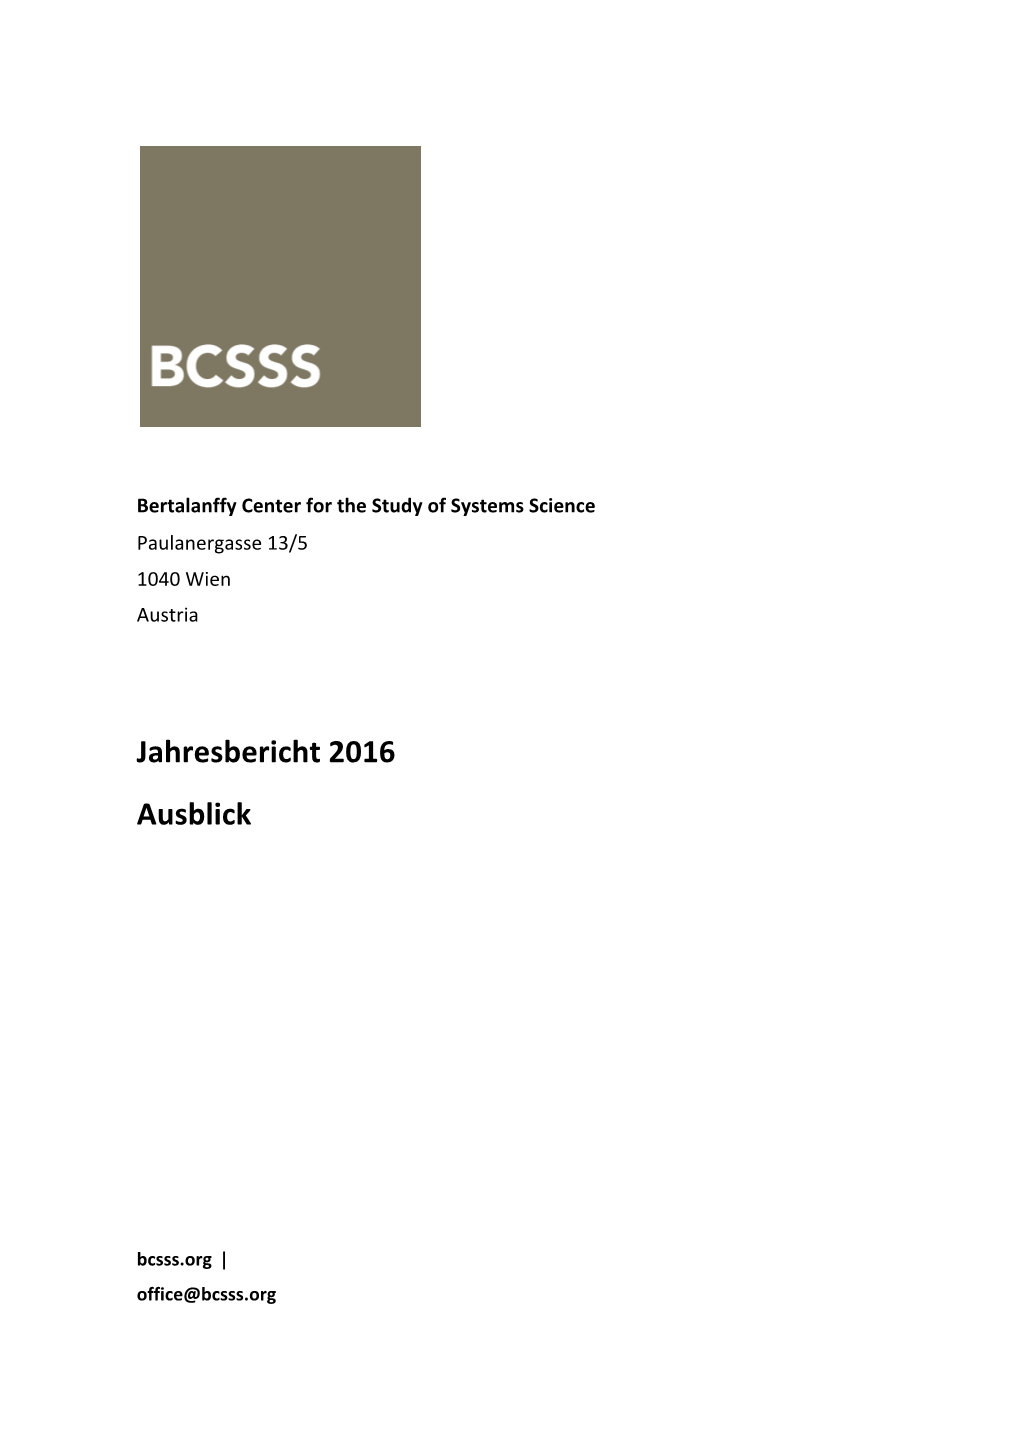 BCSSS Jahresbericht 2016